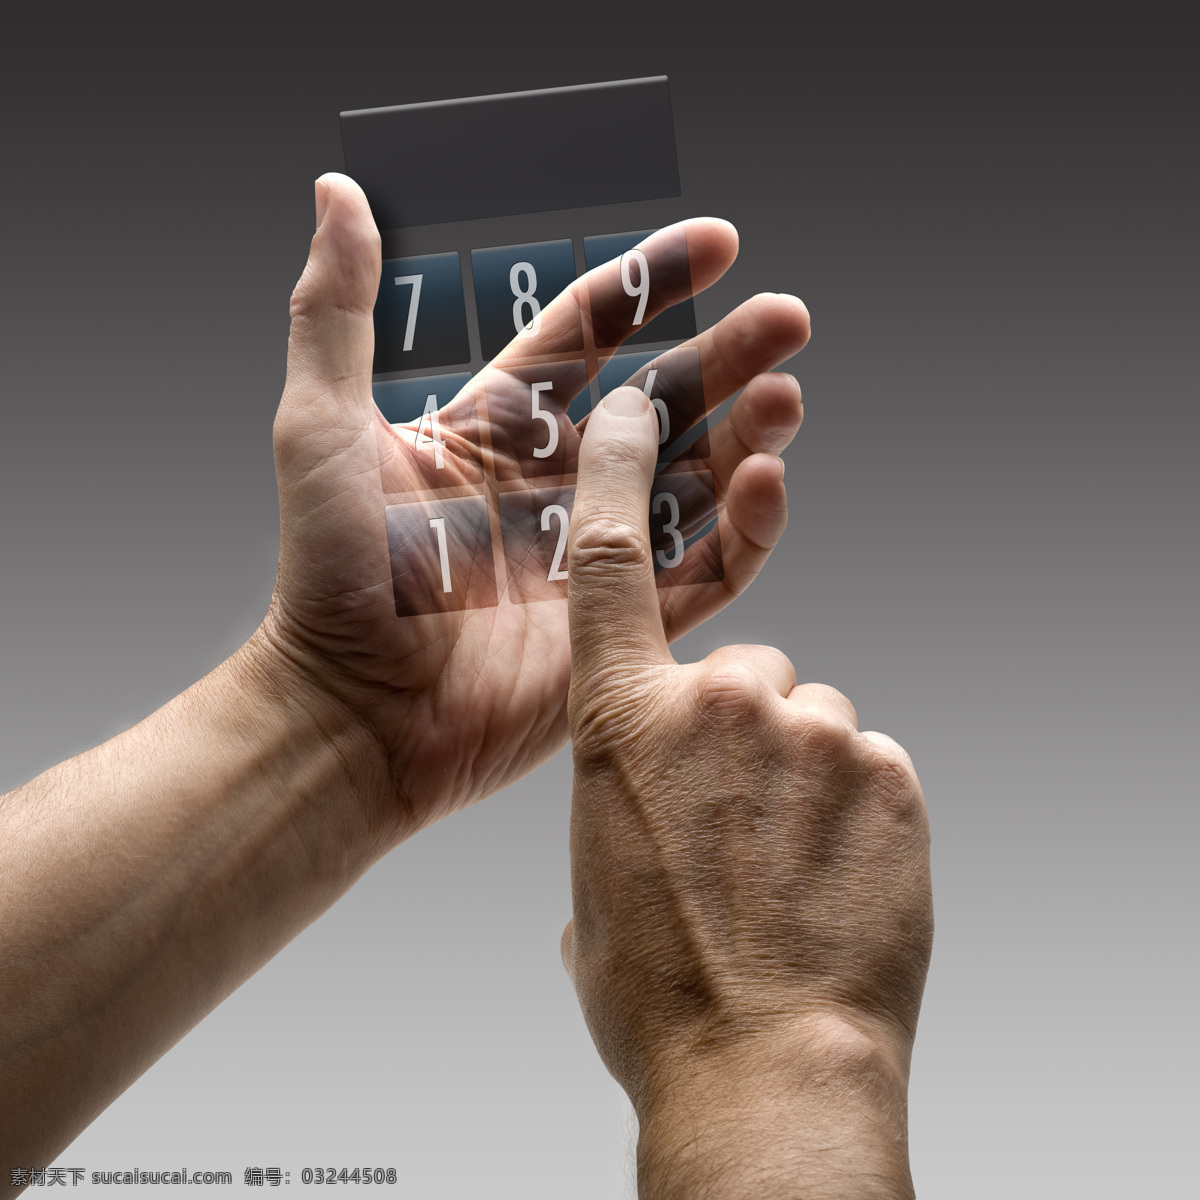 高科技 智能 手机 手 手势 按钮 智能手机 触摸屏 屏幕 未来科技 科技背景 男人 手机图片 现代科技